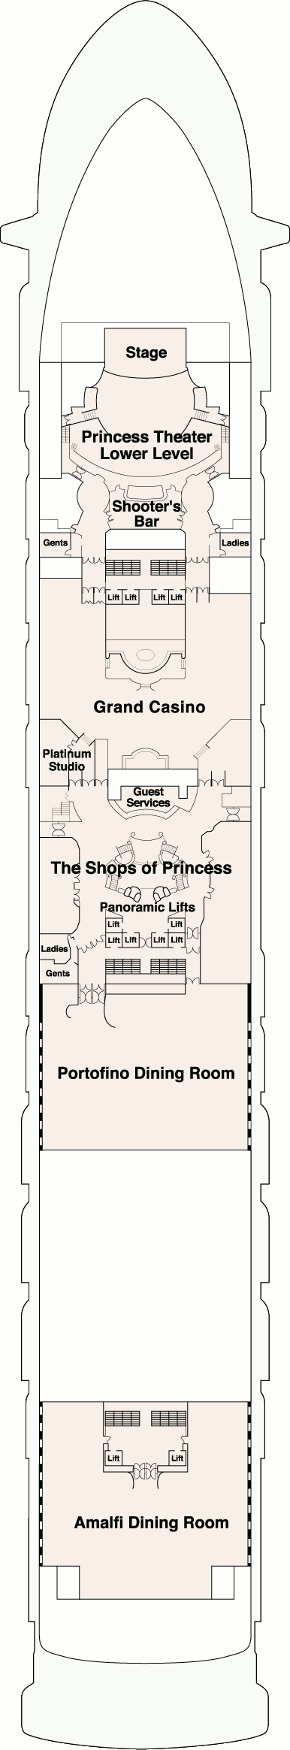 Star Princess Fiesta Deck Deck Plan